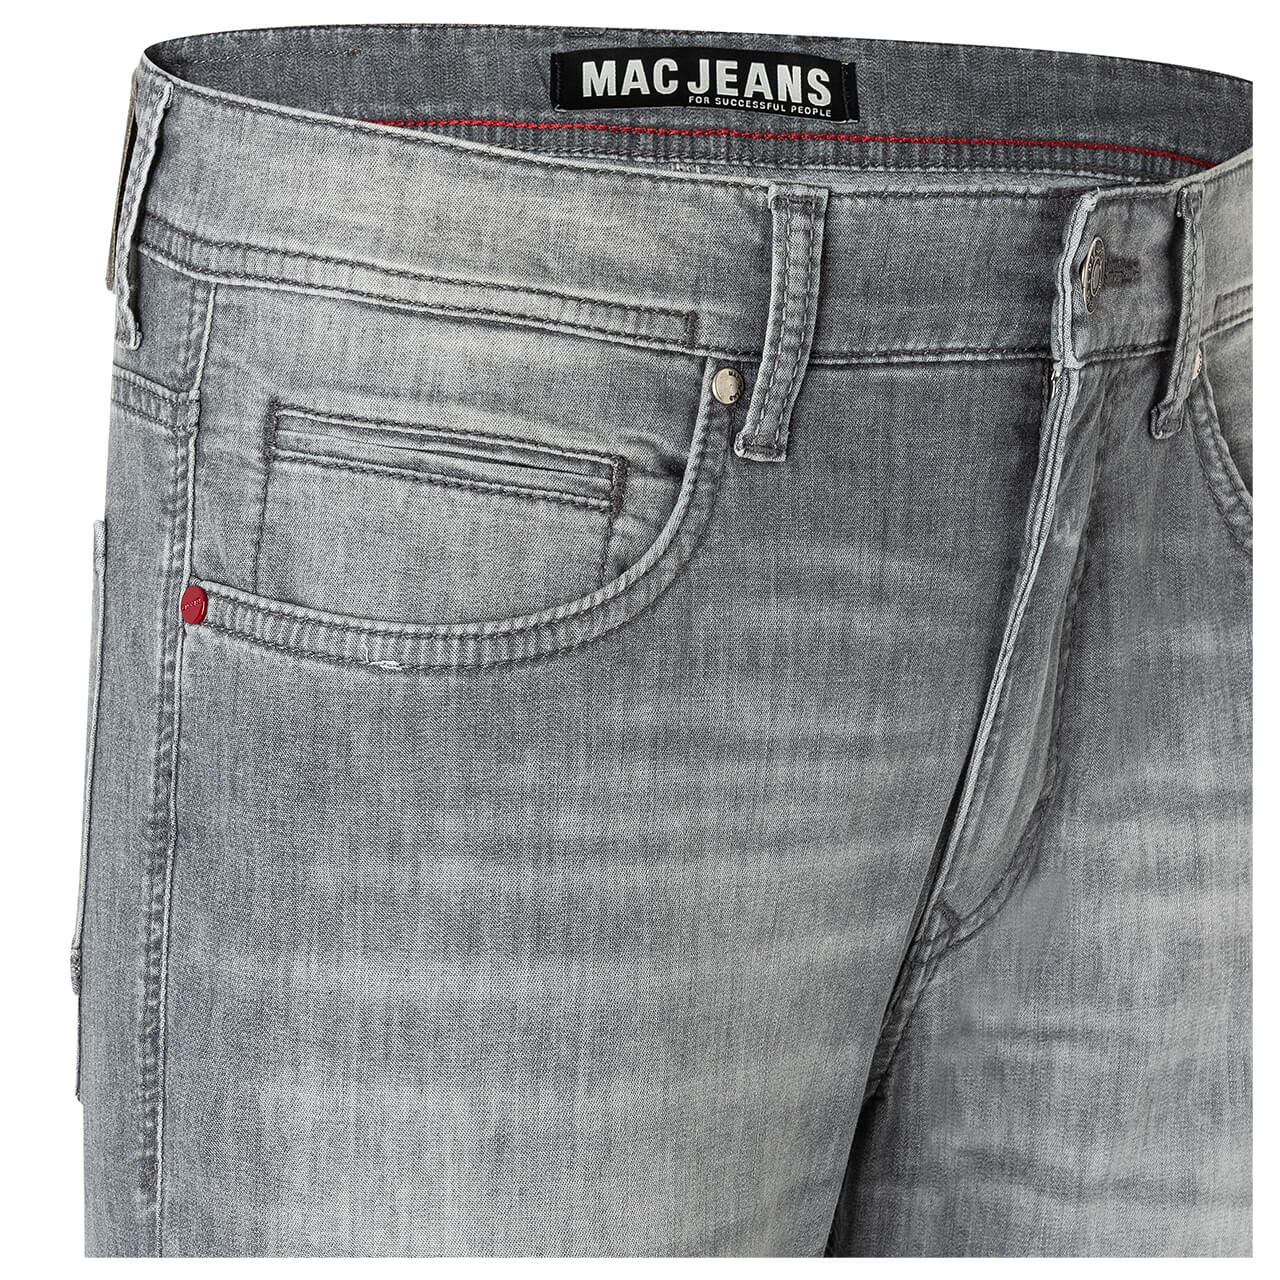 MAC Jeans Arne für Herren in Hellgrau angewaschen, FarbNr.: H848